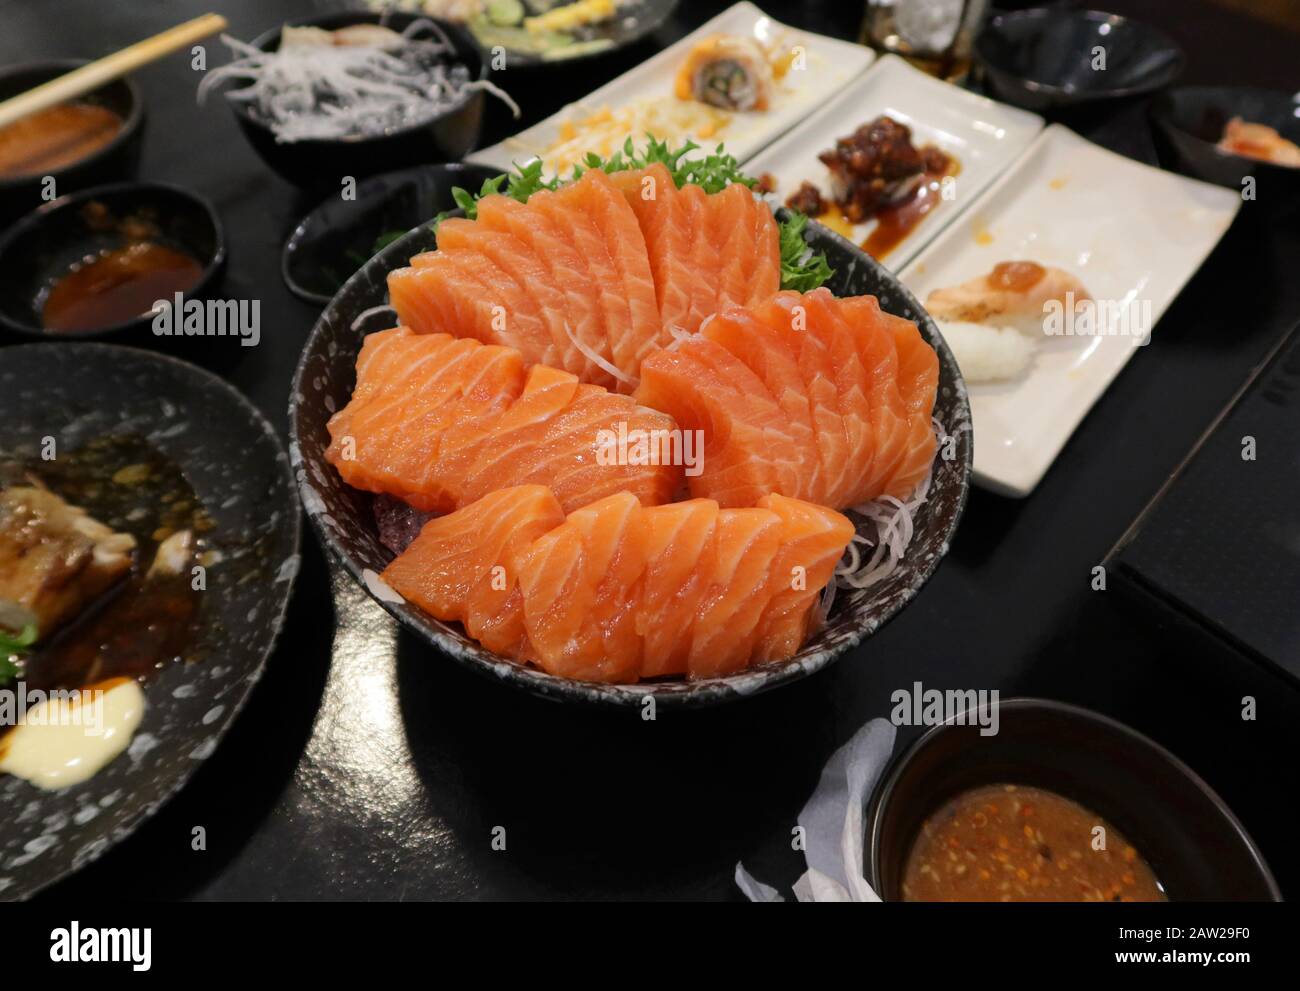 Vista ravvicinata di deliziosi sushi, sashimi di salmone crudo su piatto nel ristorante giapponese. Foto Stock